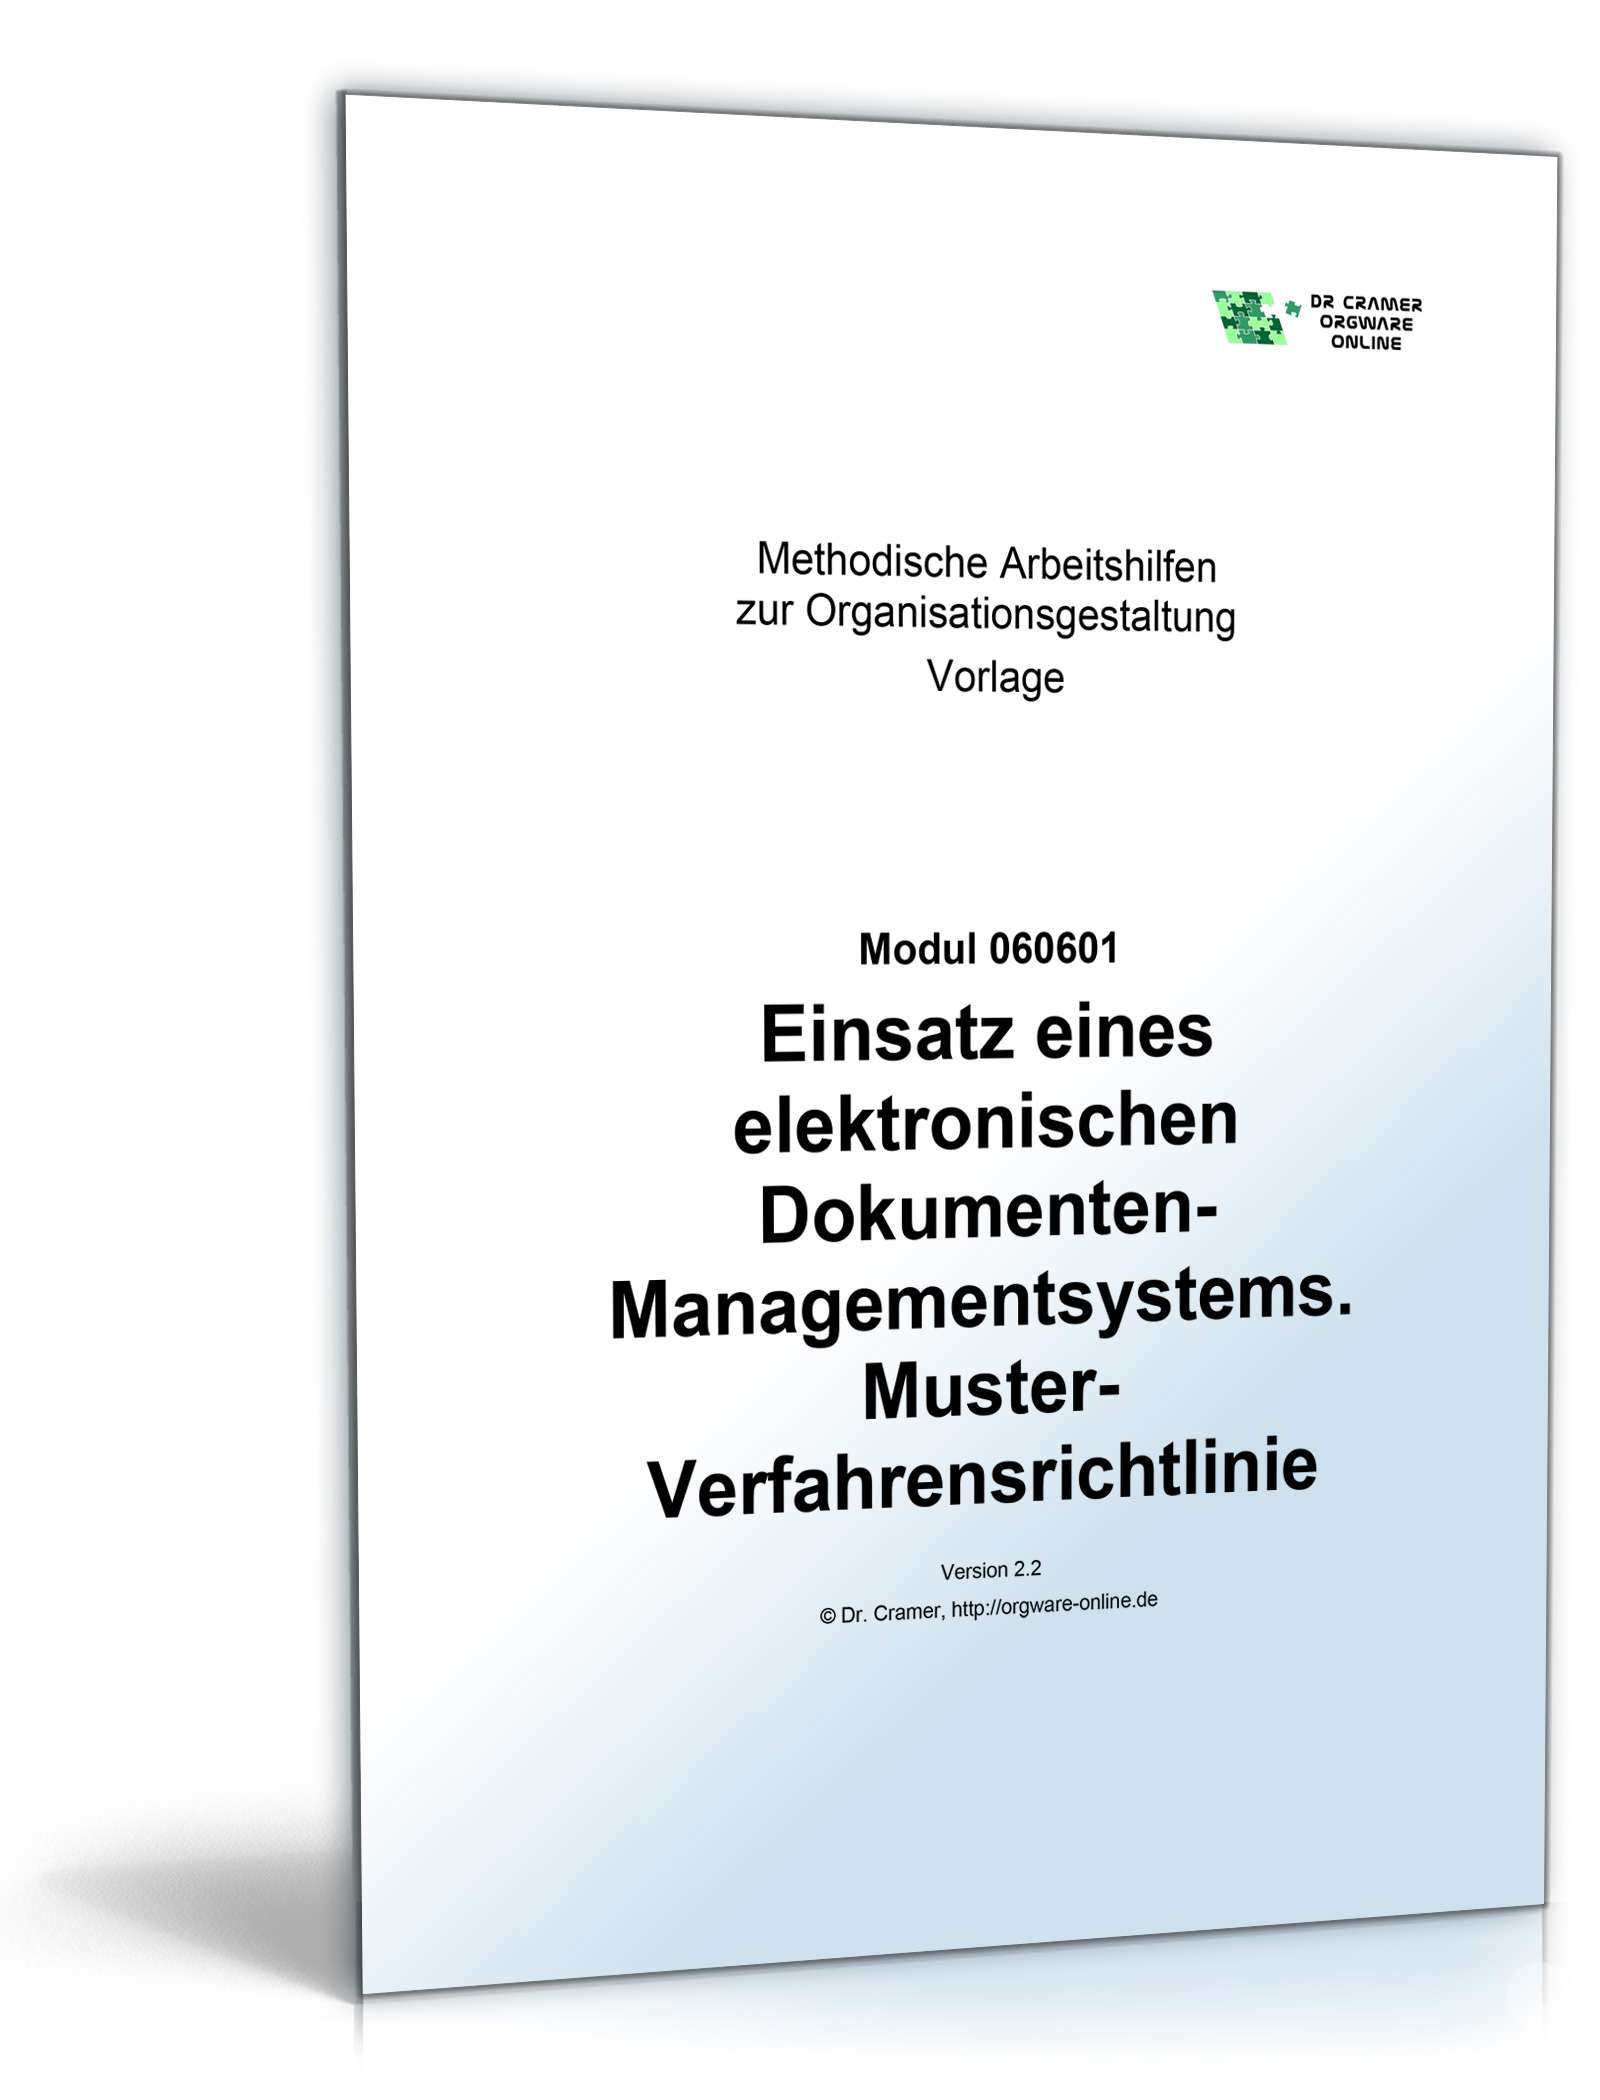 Hauptbild des Produkts: Verfahrensrichtlinie zum Einsatz eines elektronischen Dokumenten-Management-Systems
